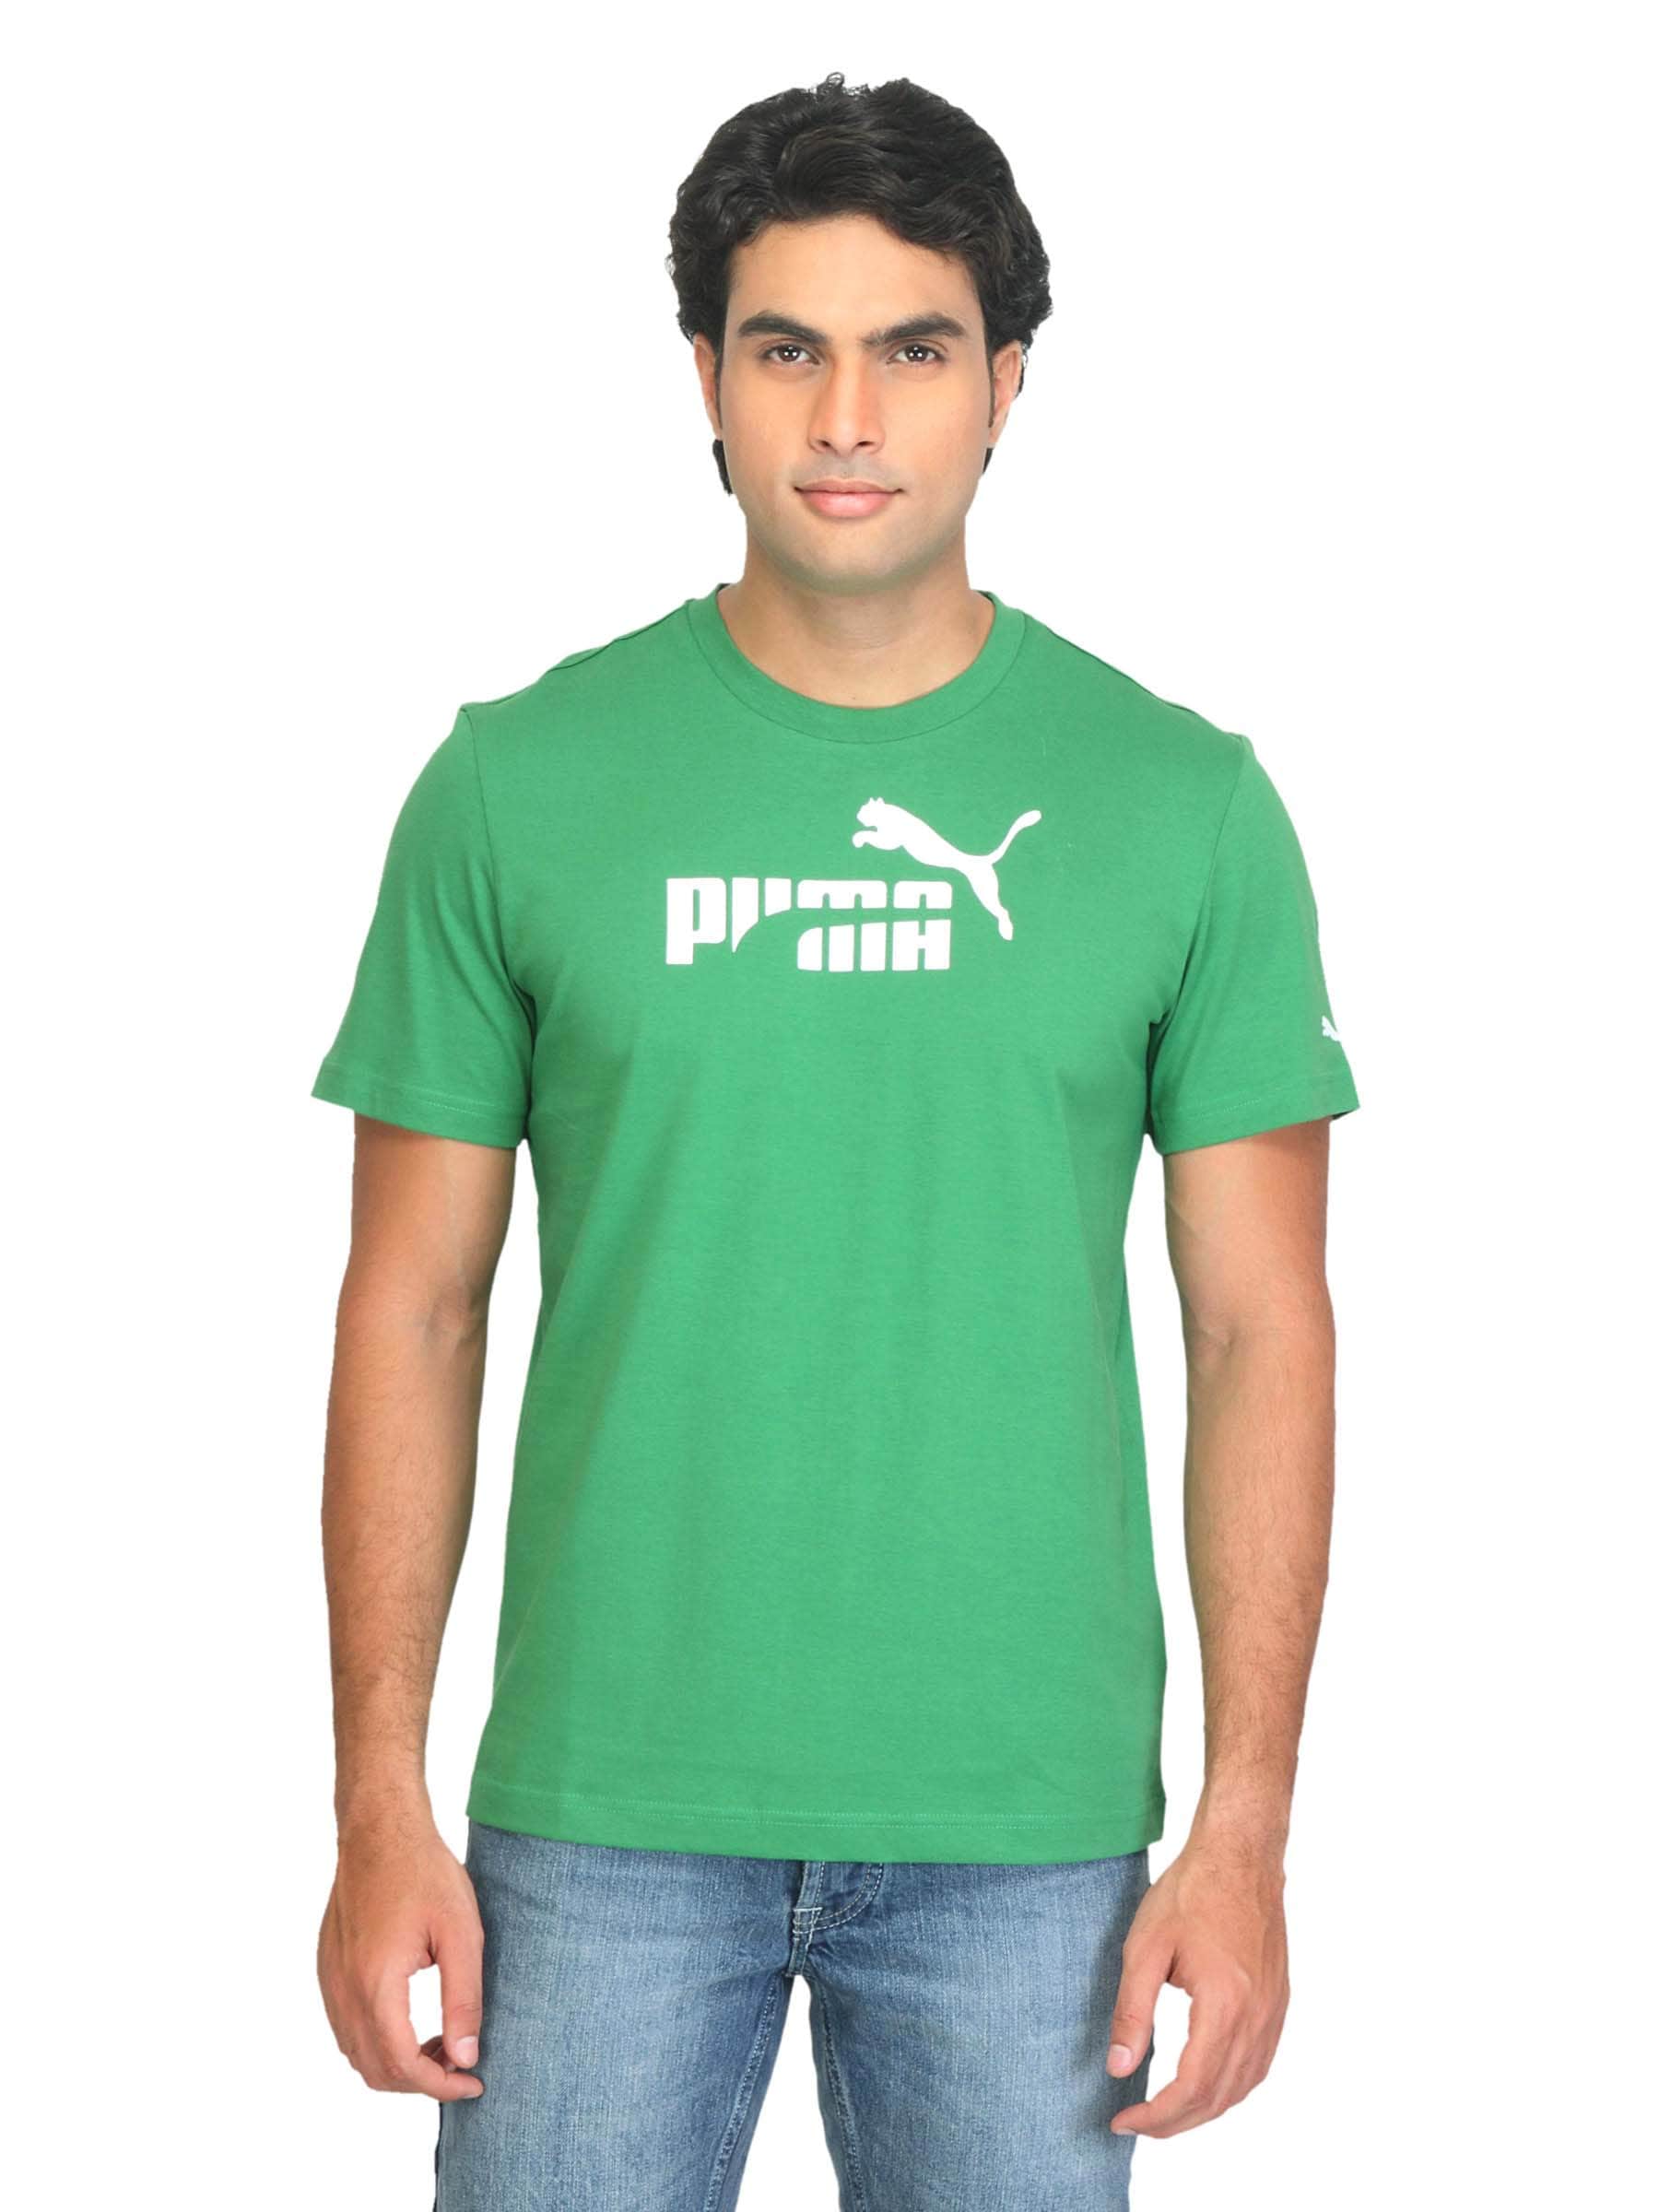 Puma Men Munchen Green T-shirt